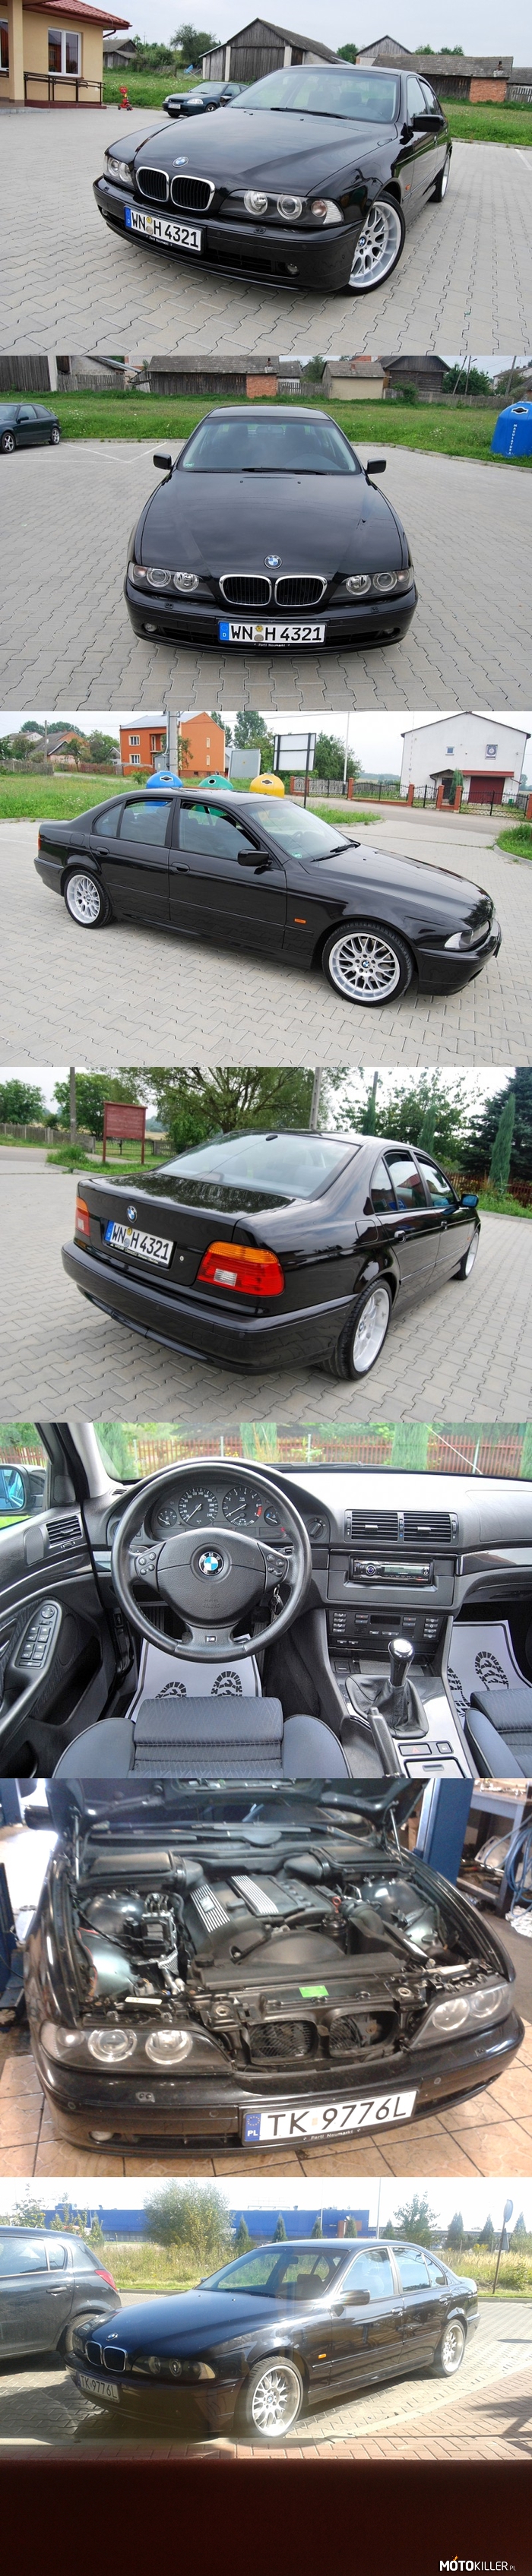 E39 530i - część 2 – Moje nowe BMW przyjęło się, w związku z czym dodaję drugą porcję zdjęć!
Samochód można spotkać głównie na Podlaskich drogach, na takich blachach, jak na zdjęciu. 